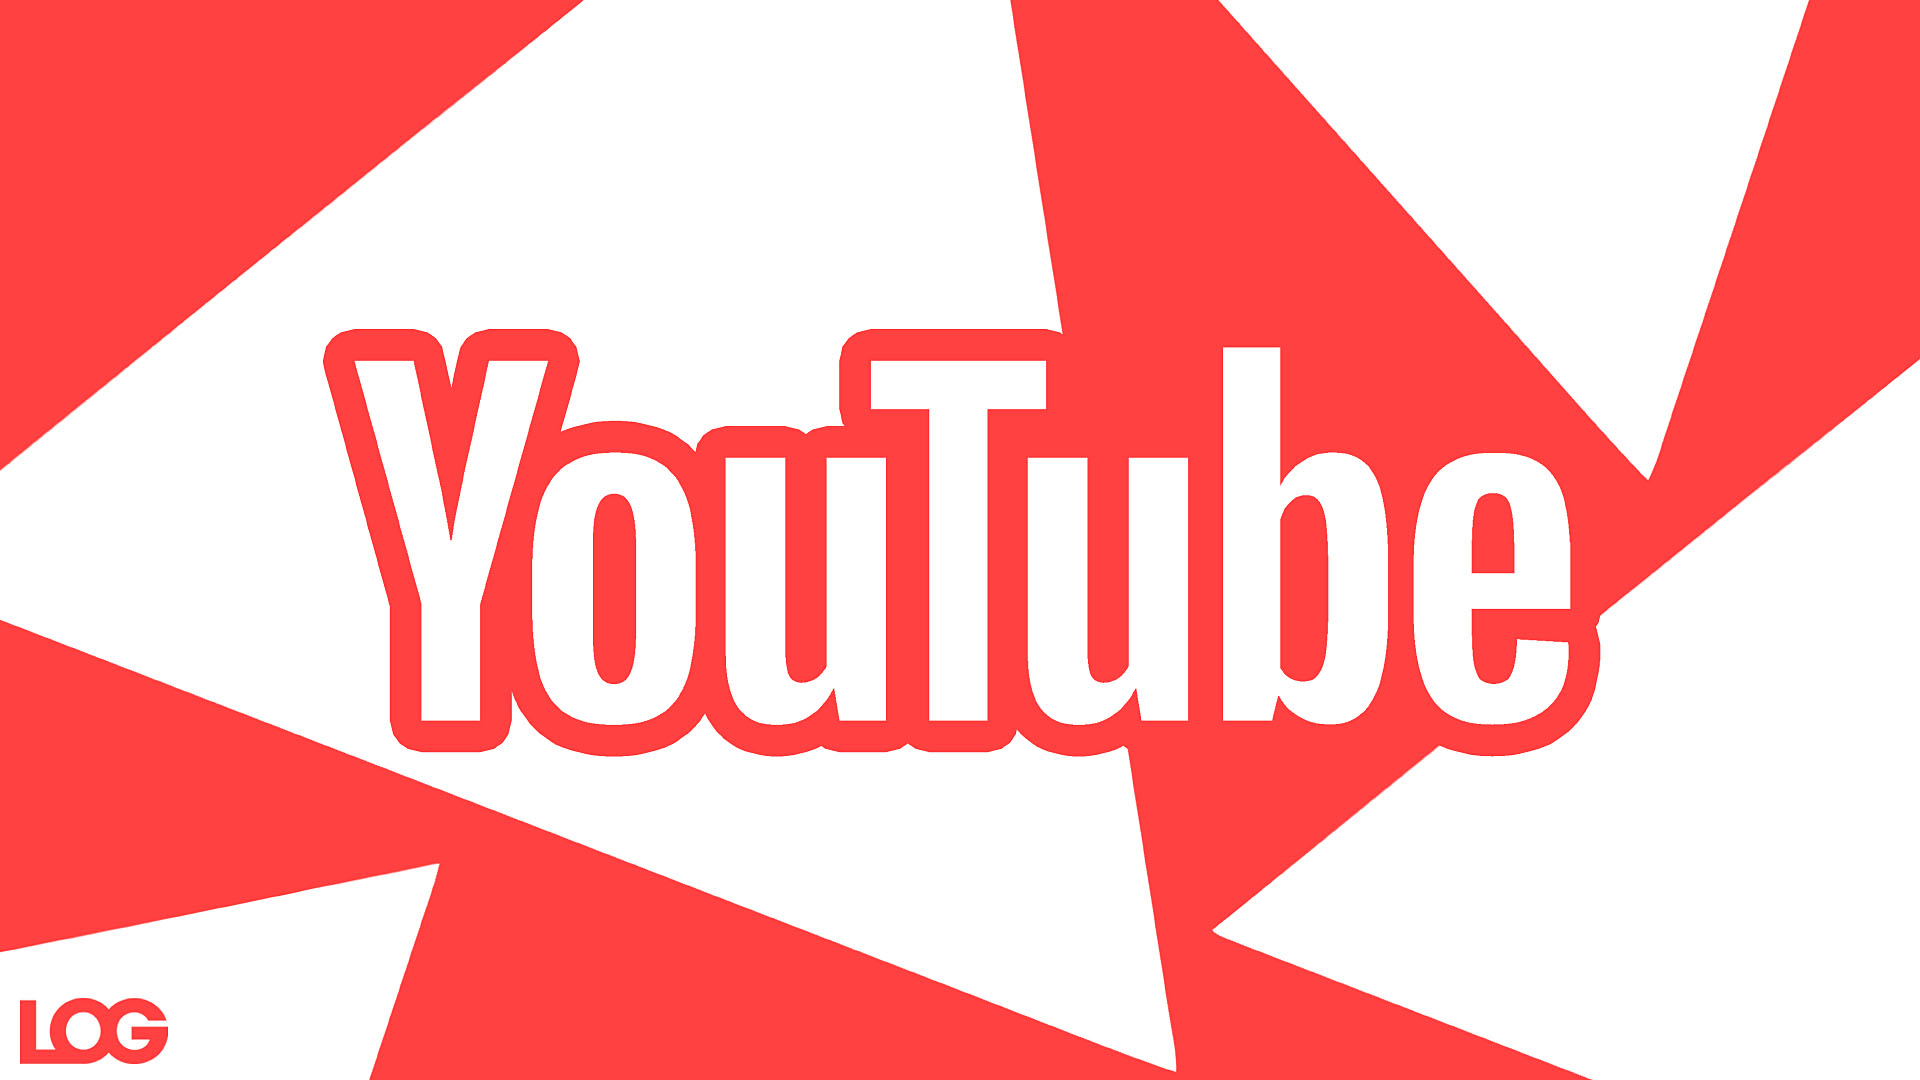 YouTube'un Üretken Yapay Zeka Kullanarak İçerik Üreticilere Video Fikirleri Verme Sistemi